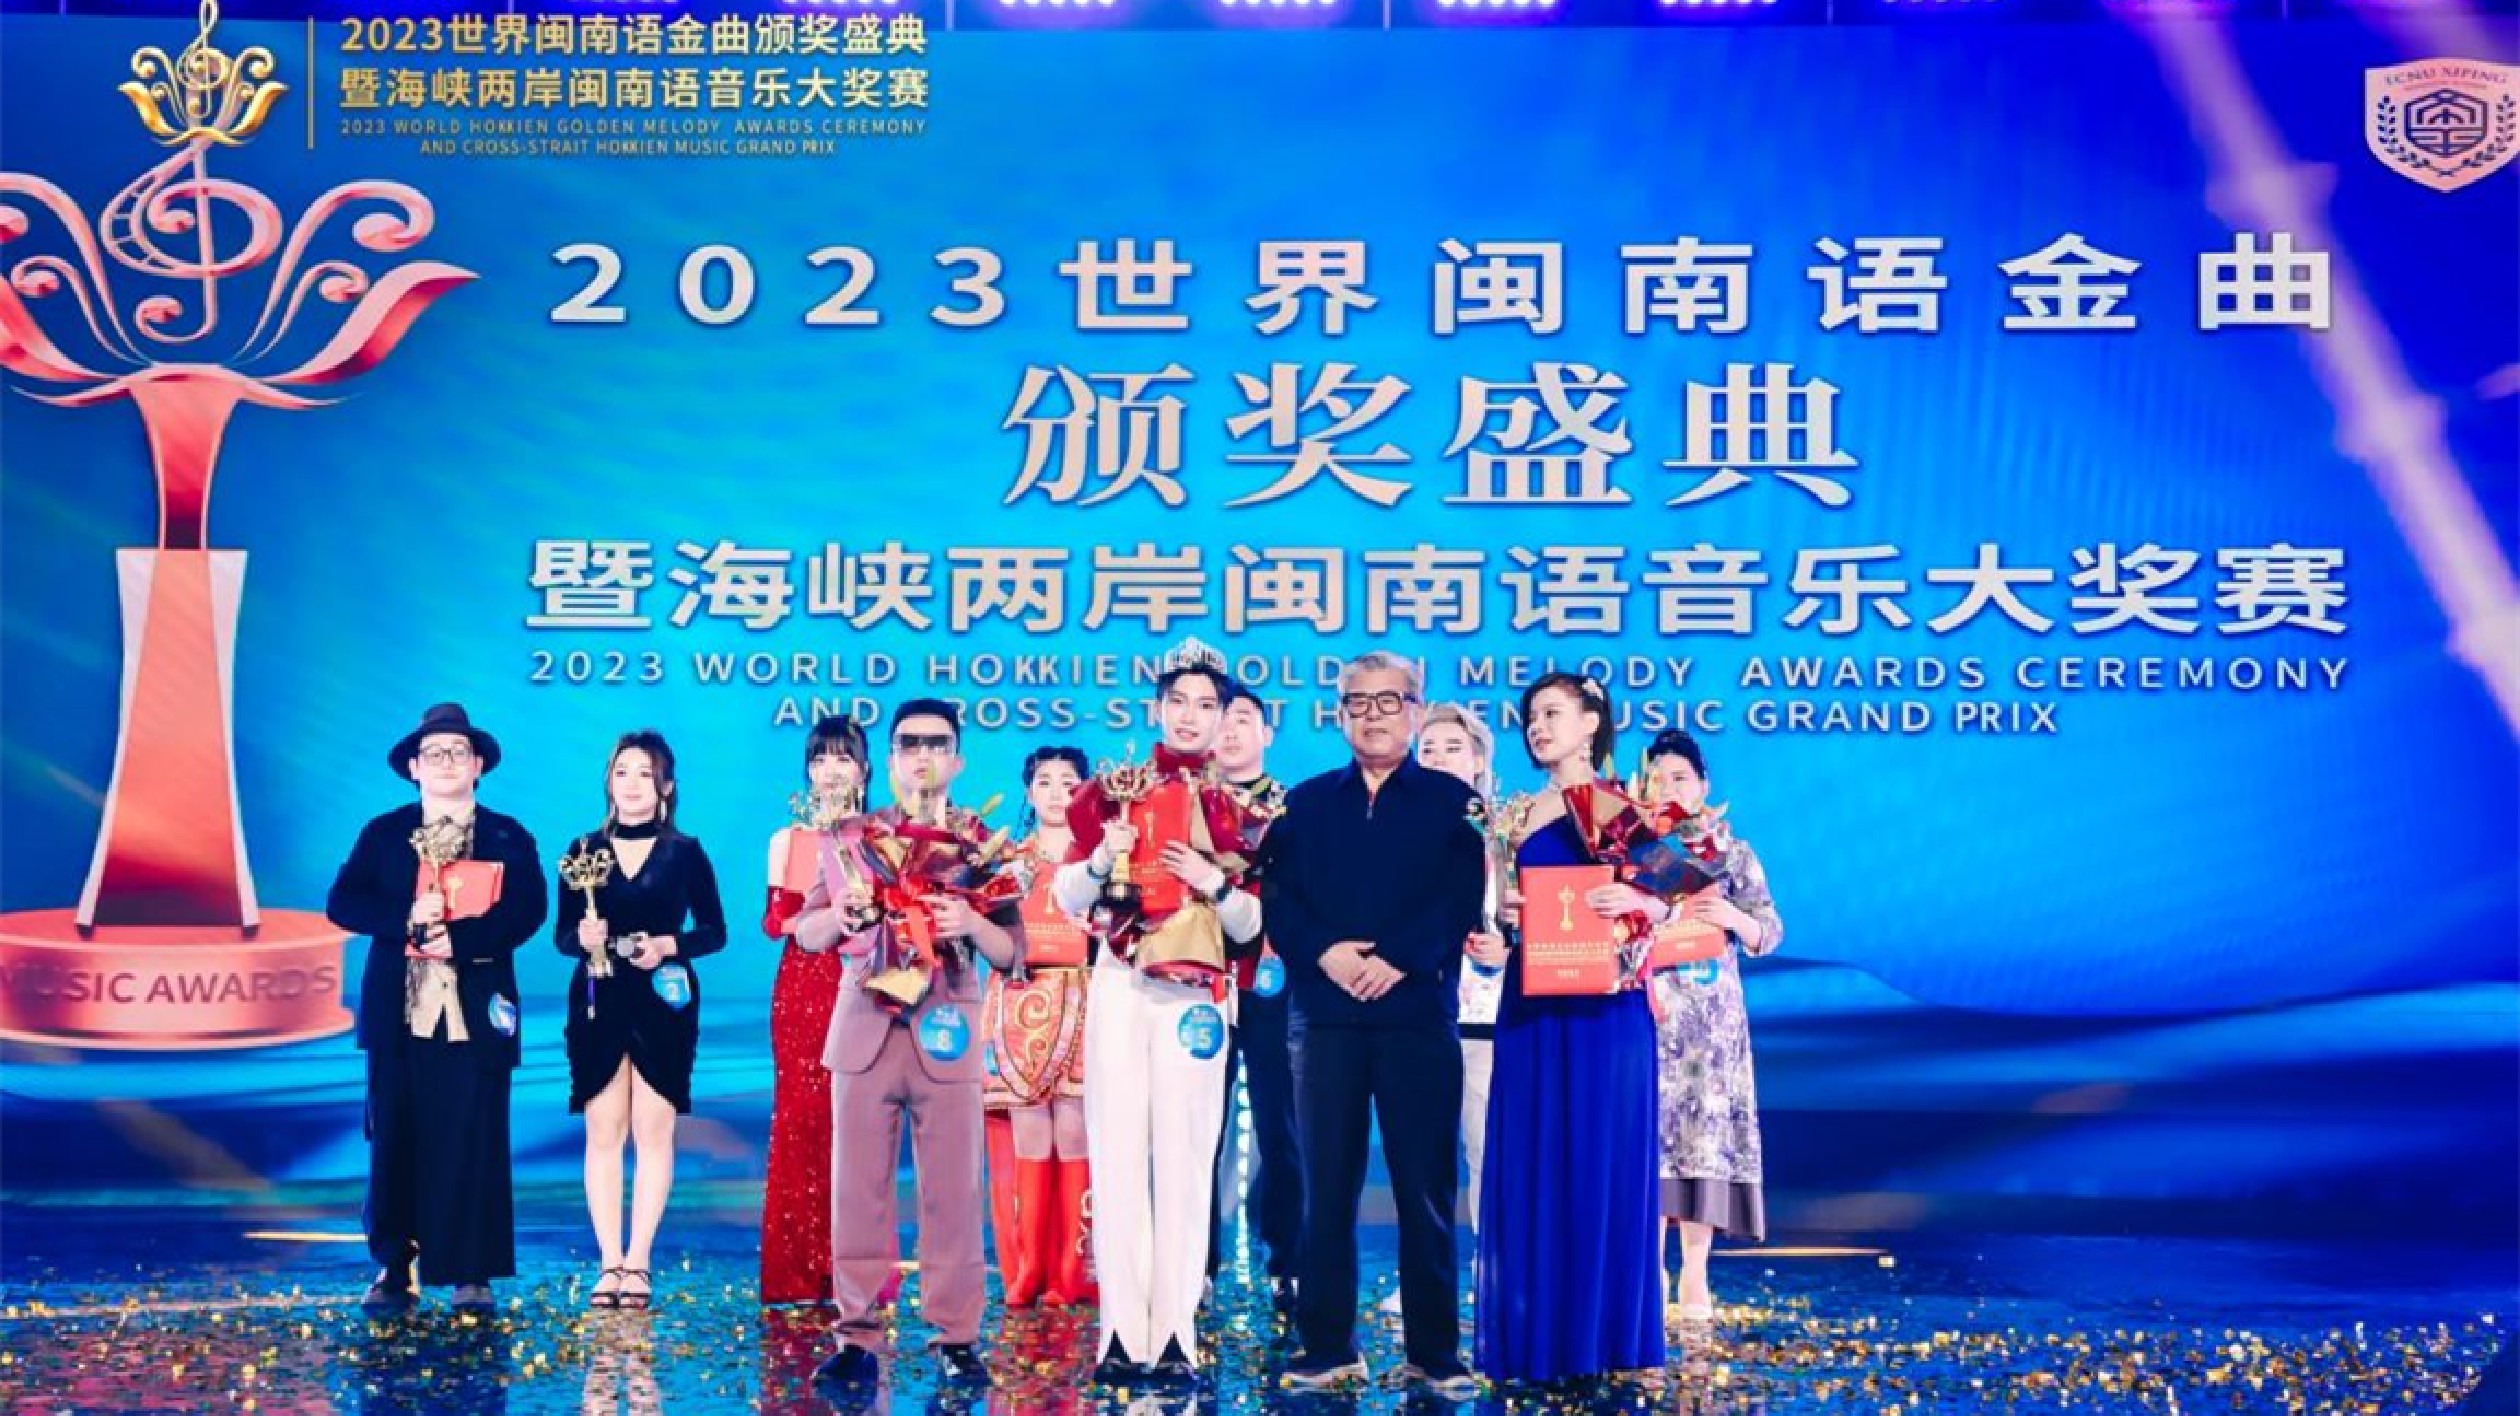 2023世界閩南語金曲頒獎盛典在廈門舉行